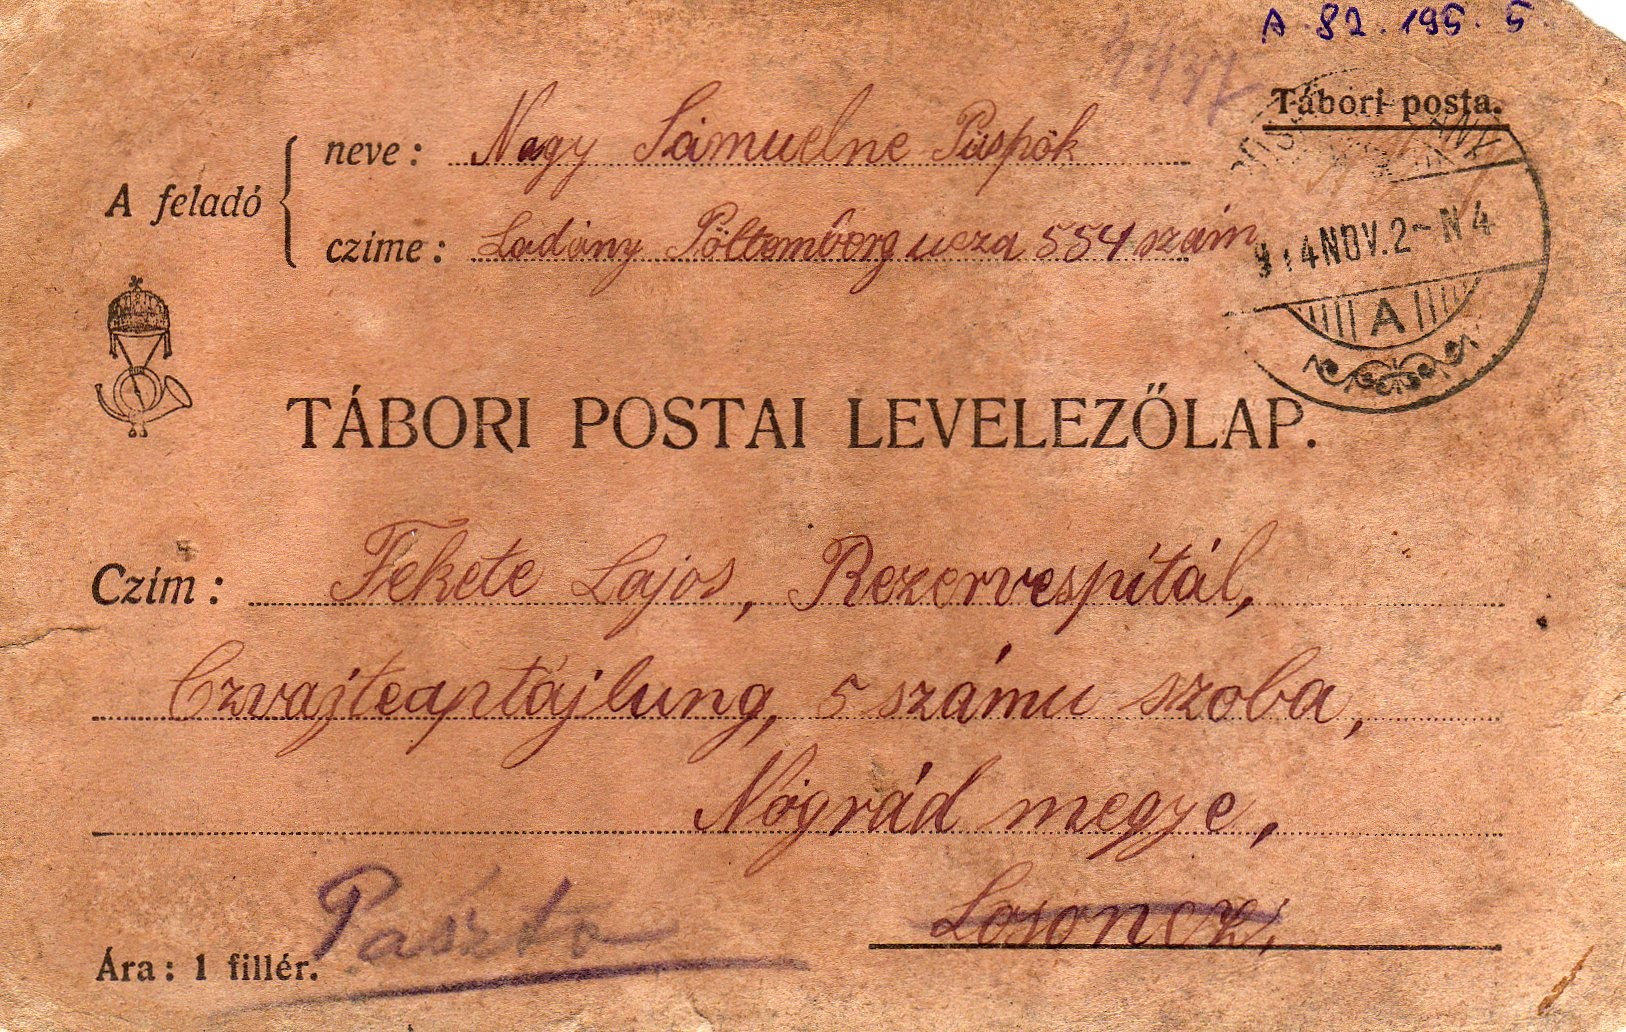 Fekete Lajoshoz írt levél az első világháborúban (Karacs Ferenc Múzeum, Püspökladány CC BY-NC-SA)